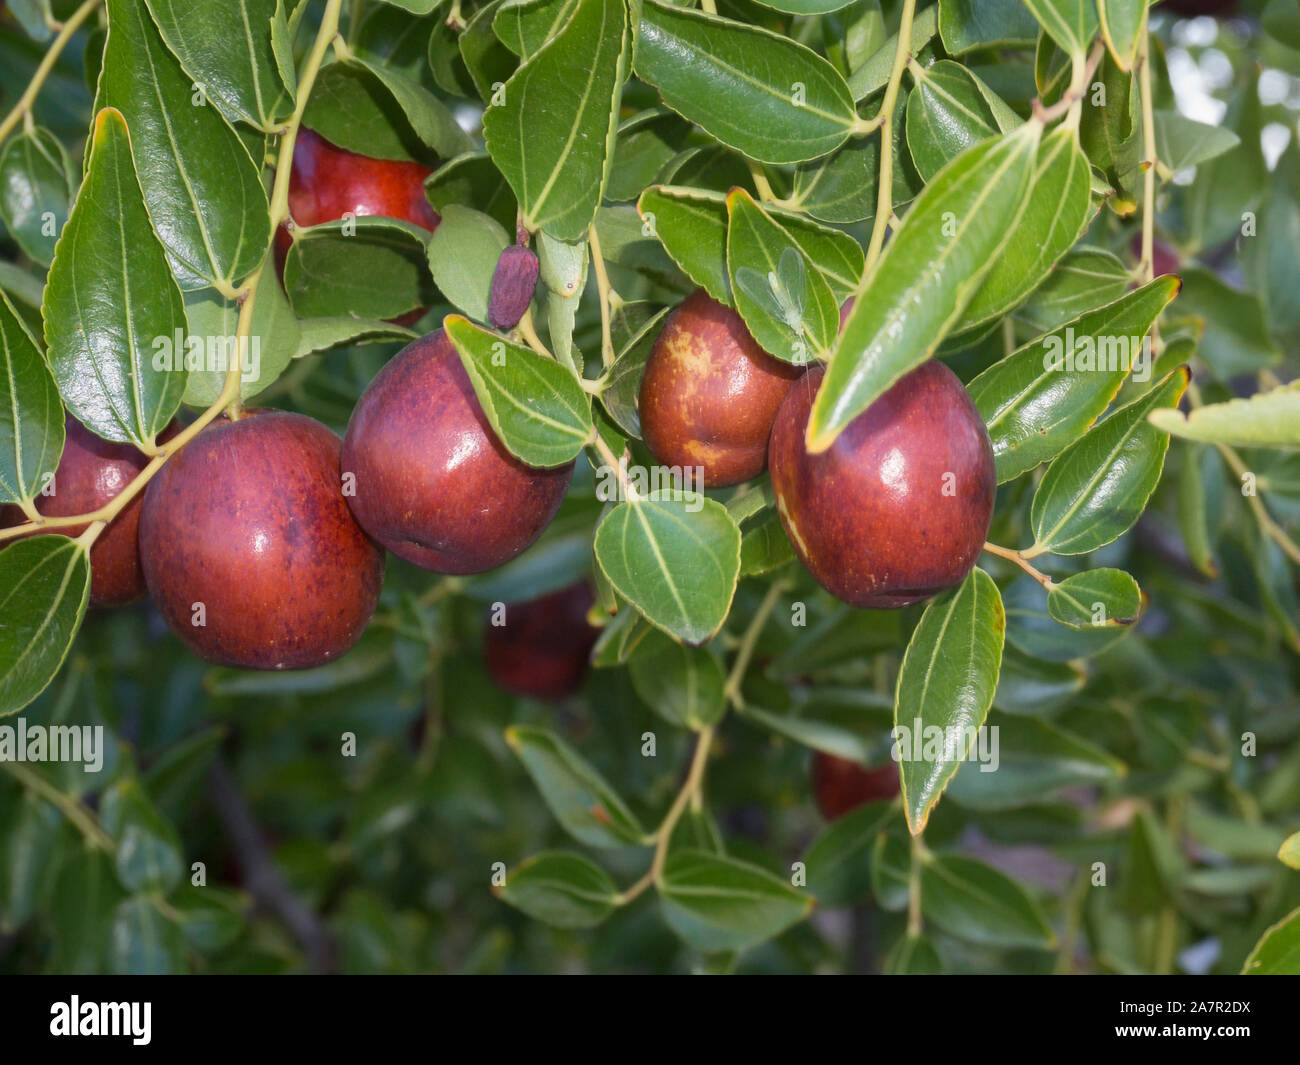 Azofaifo (Ziziphus jujuba) fleshy fruit Stock Photo